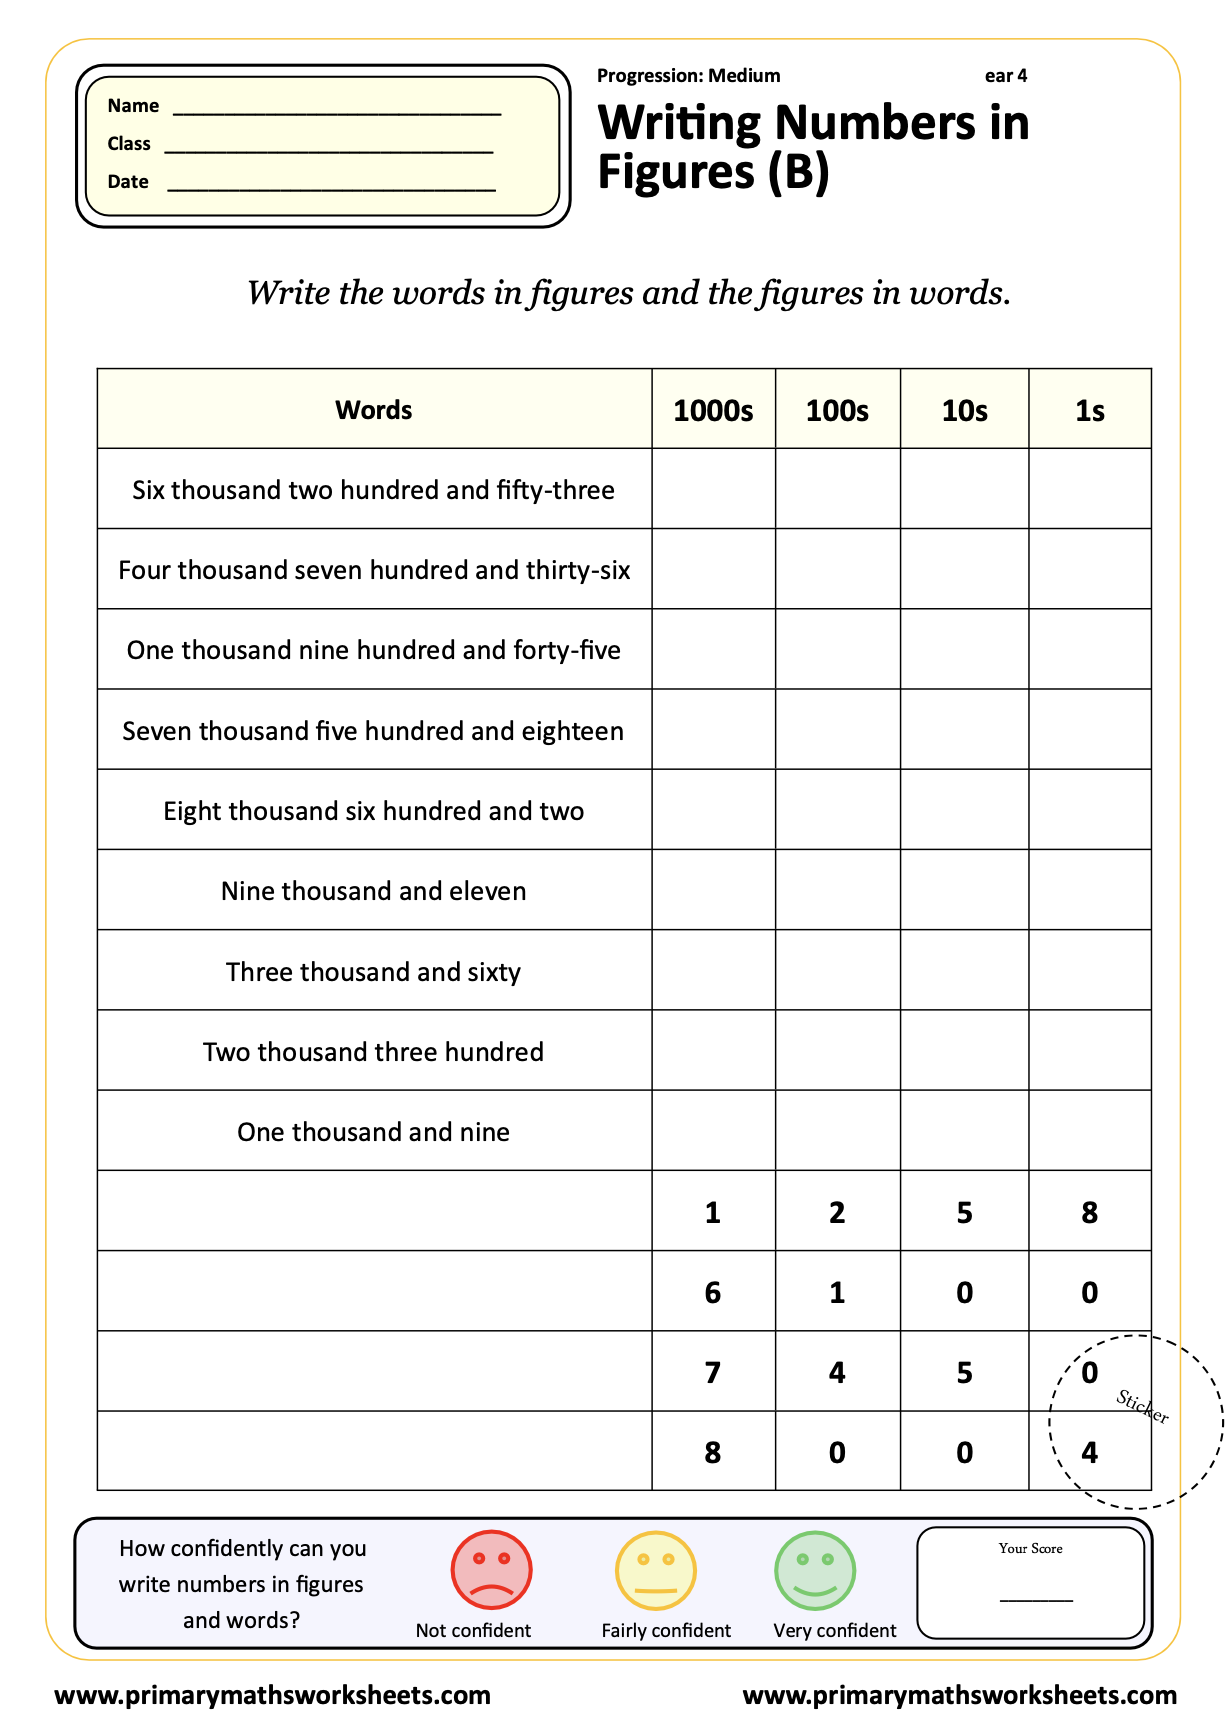 Writing Numbers in Figures Worksheet